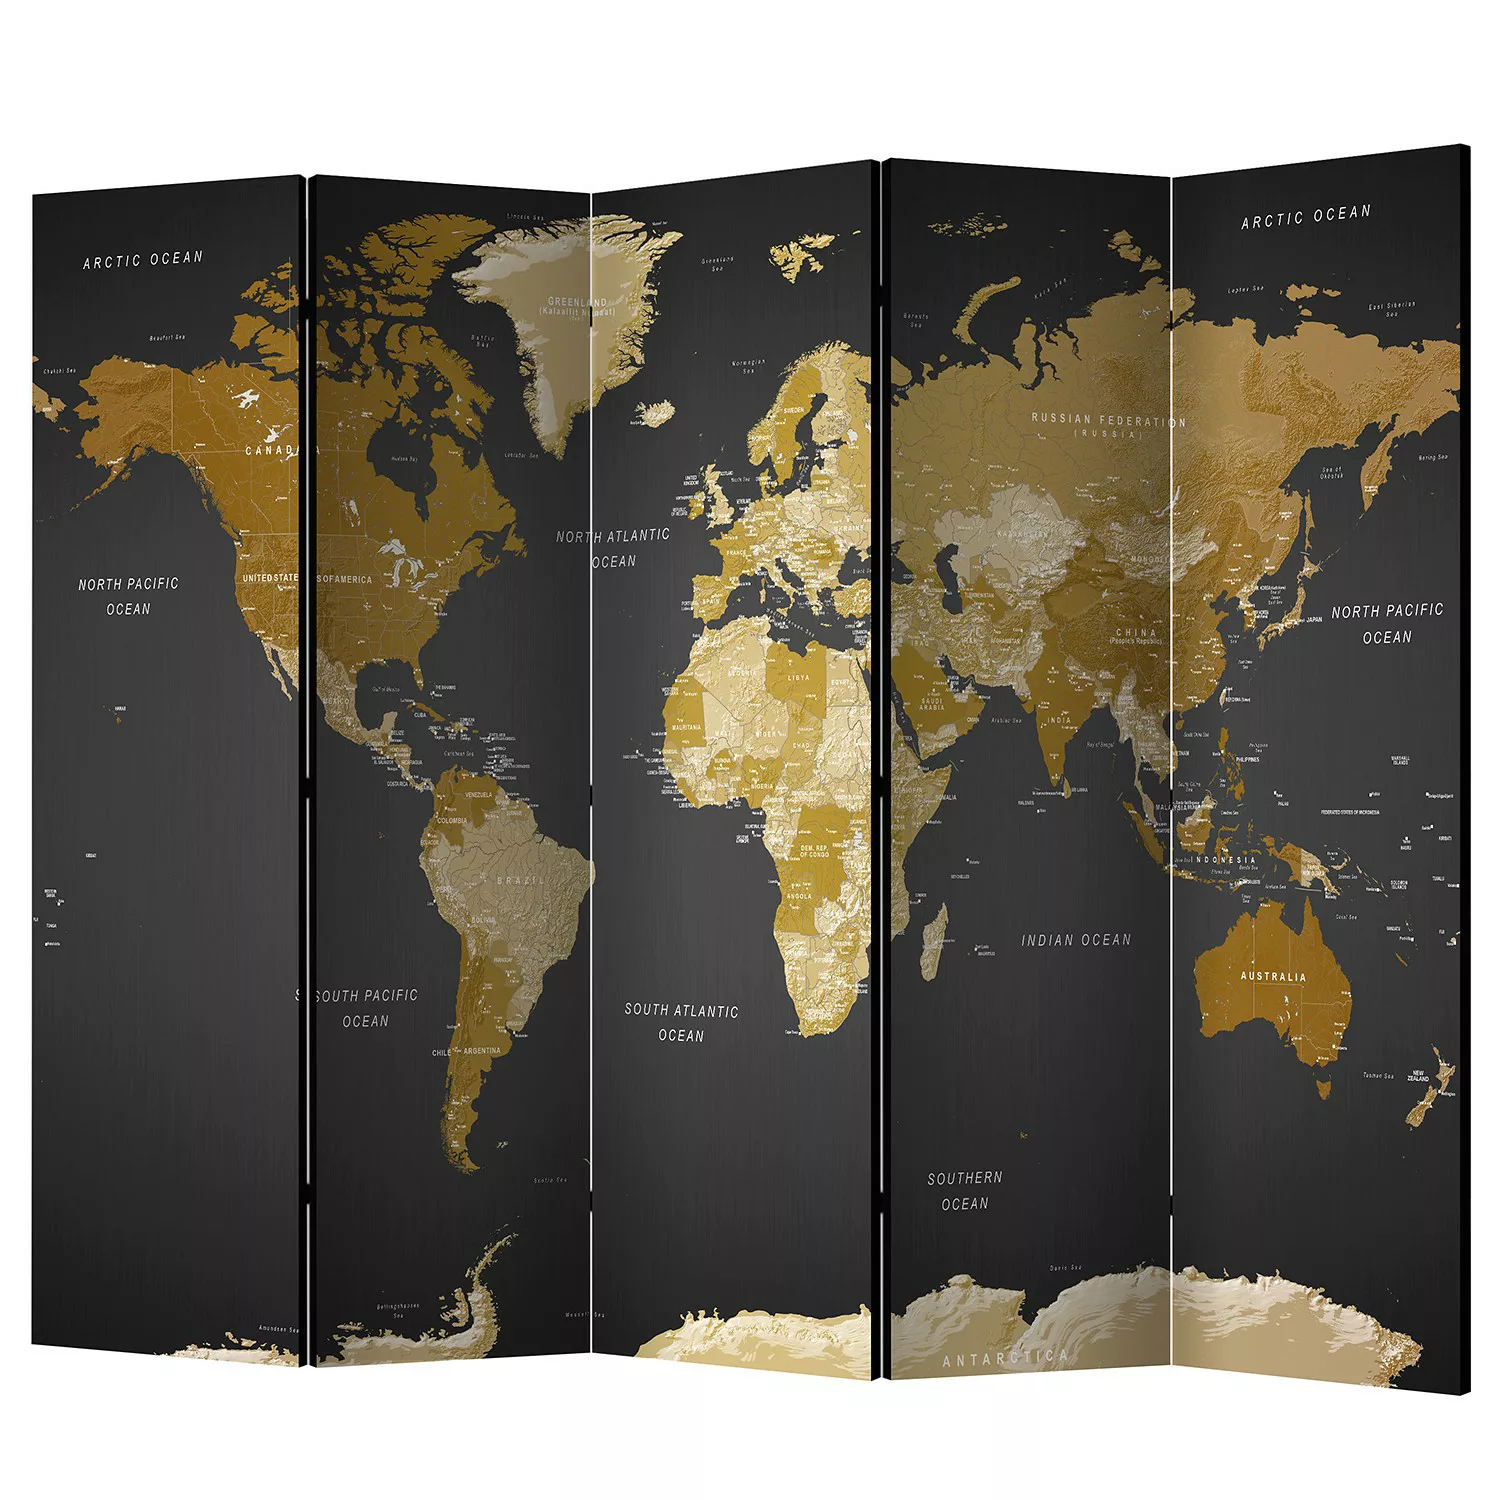 home24 Paravent World map on dark background günstig online kaufen